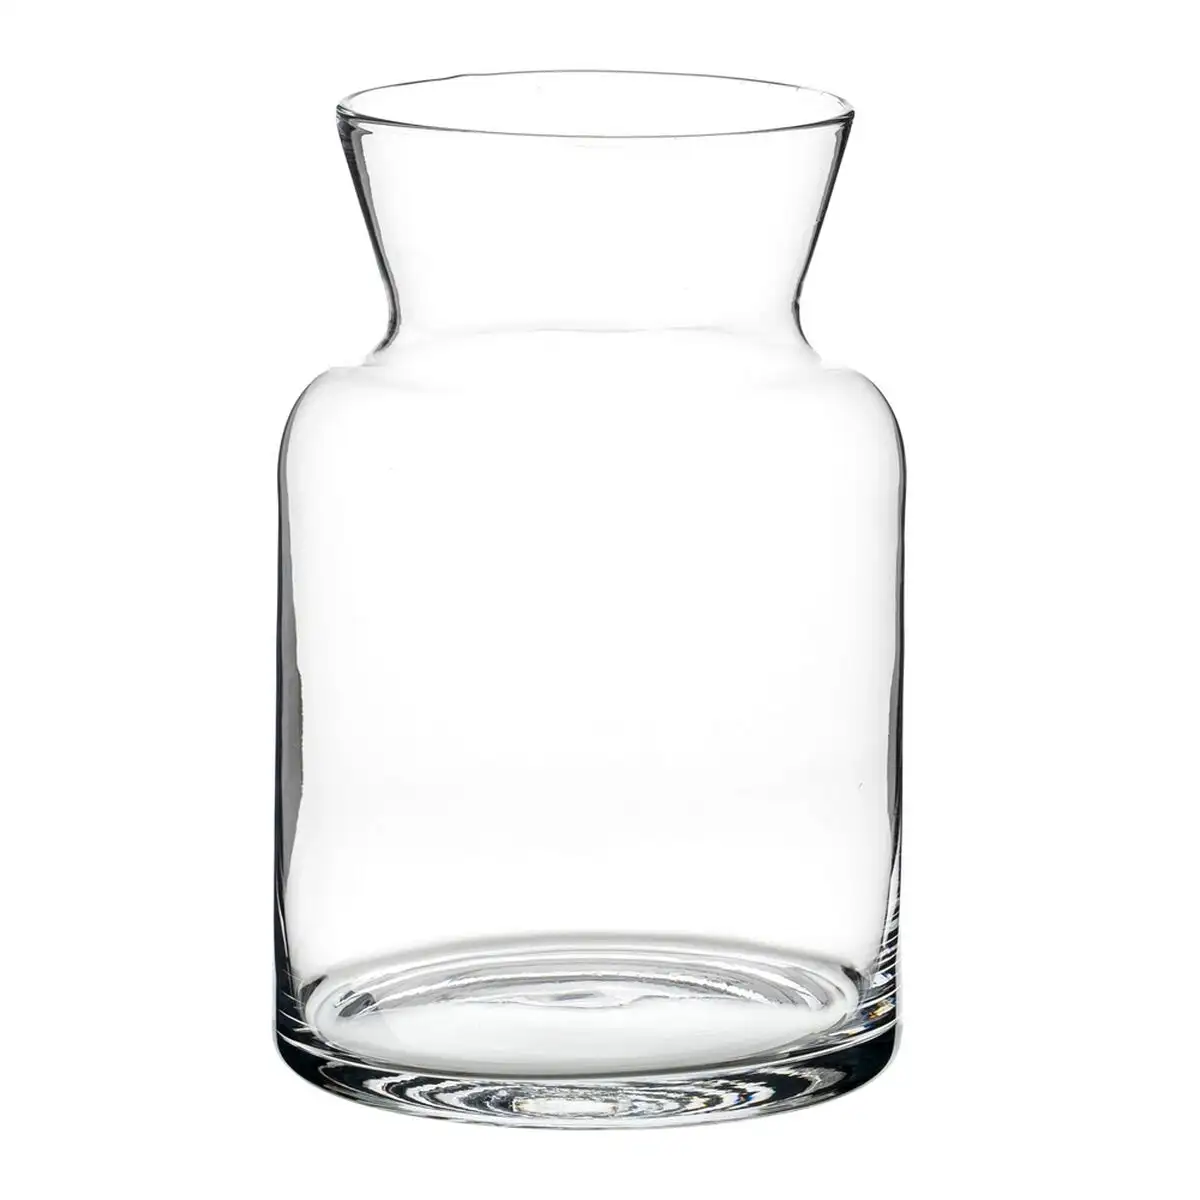 Vase cristal transparent 17 x 17 x 26 cm_1424. DIAYTAR SENEGAL - Votre Passage vers la Découverte. Explorez notre boutique en ligne pour trouver des trésors qui vous attendent, du traditionnel à l'avant-garde.